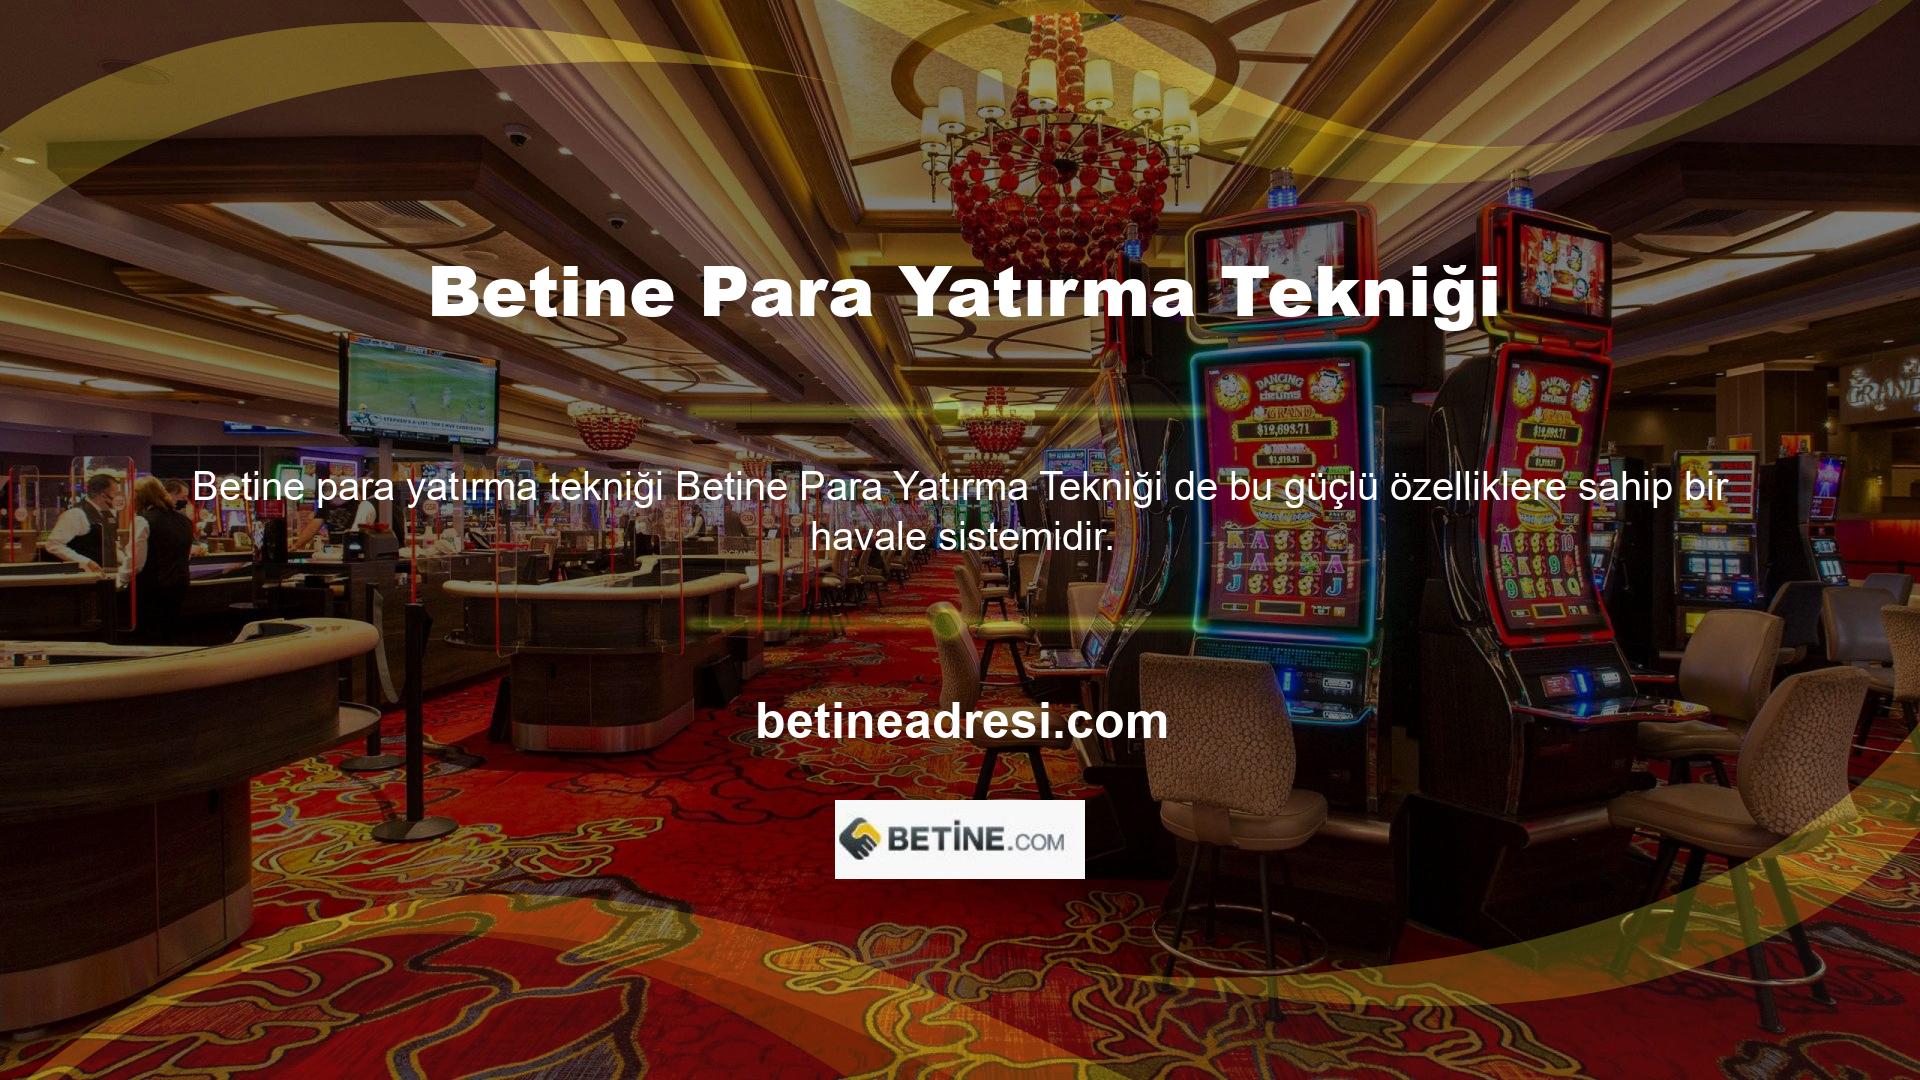 Tüm kullanıcılar genel olarak Betine TV'nin bu kullanıcı deneyiminden memnun olduklarını belirtti Sosyal medya araçları, Betine TV kullanıcı deneyimini tüm yönleriyle deneyimlemenize olanak sağlıyor